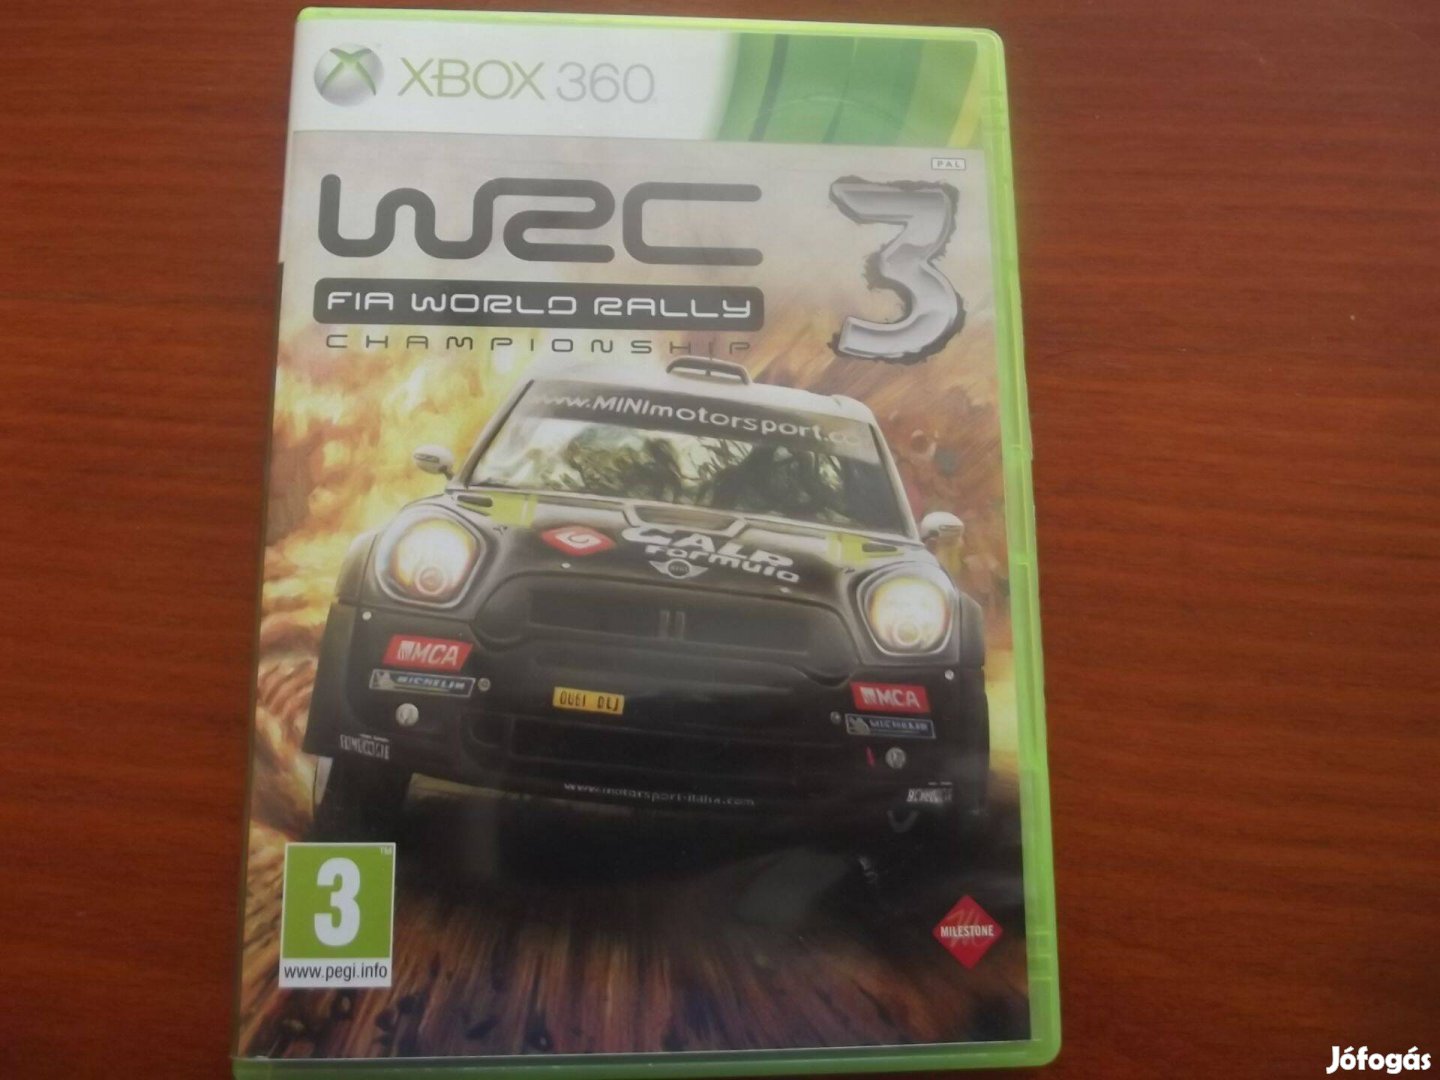 X-176 Xbox 360 Eredeti Játék : WRC 3 Fia World Rally Championship